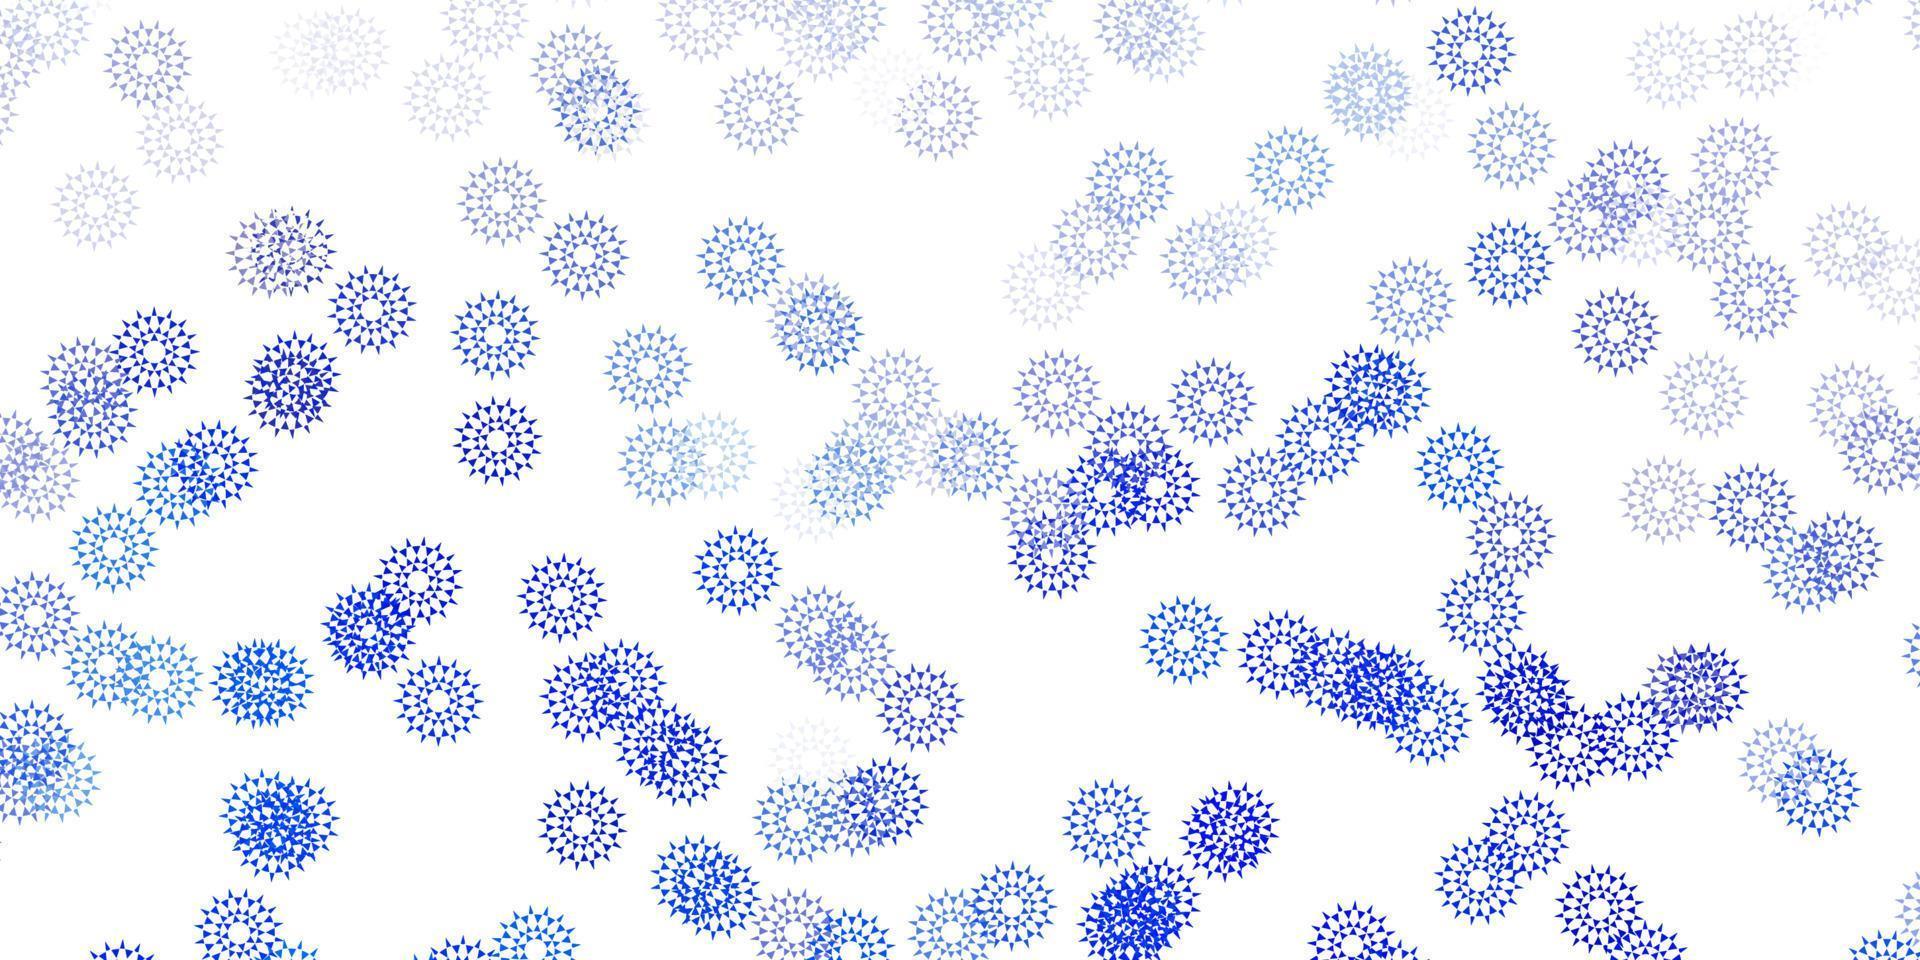 fond de doodle vecteur bleu clair avec des fleurs.